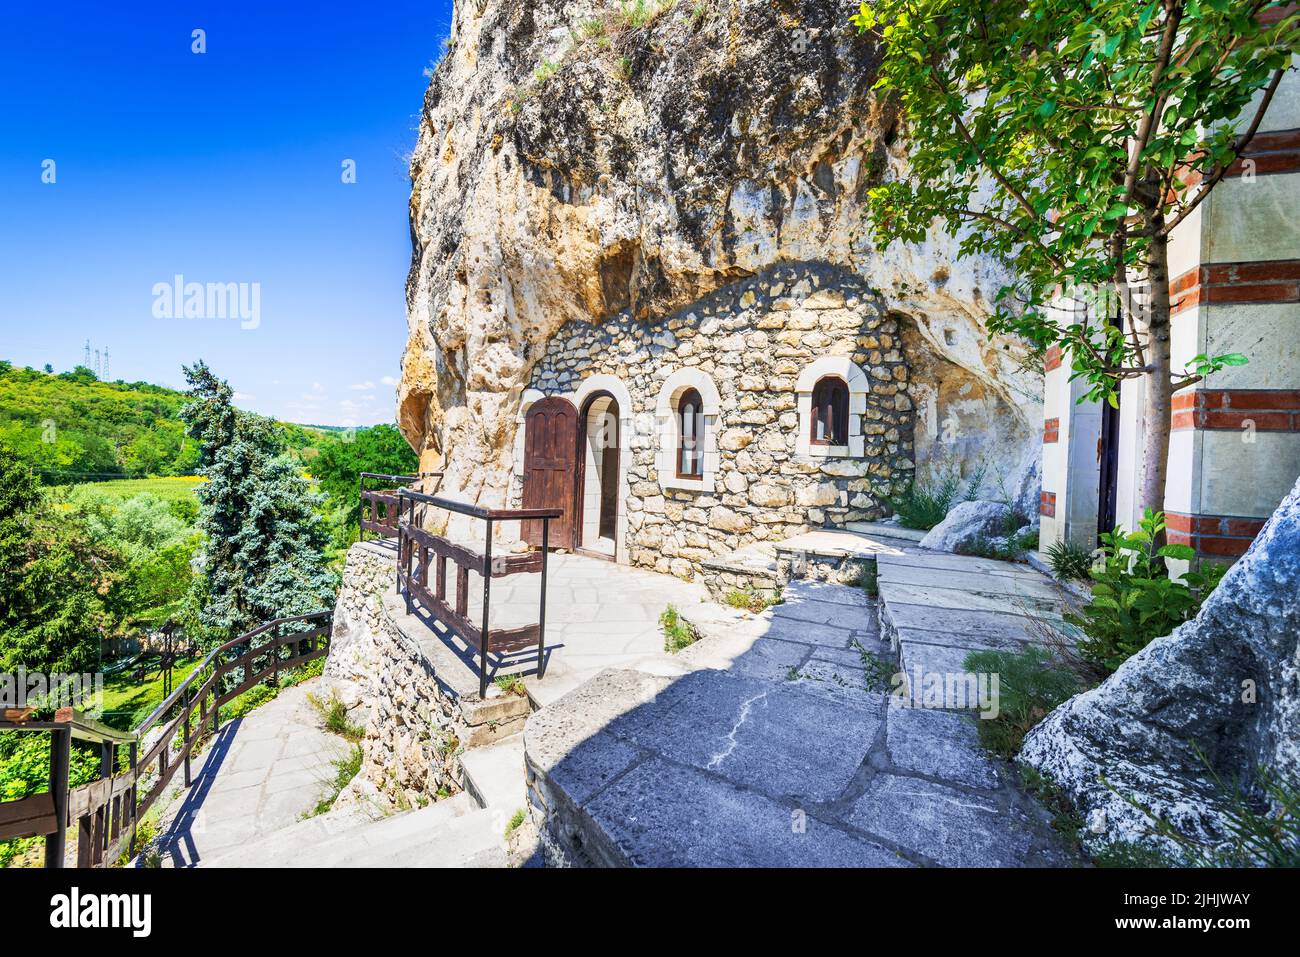 Basarbovo, Bulgarien. Altes Basarbovo-Kloster, in Felsen gehauene orthodoxe Sehenswürdigkeit in der Region Ruse, Donautal. Stockfoto